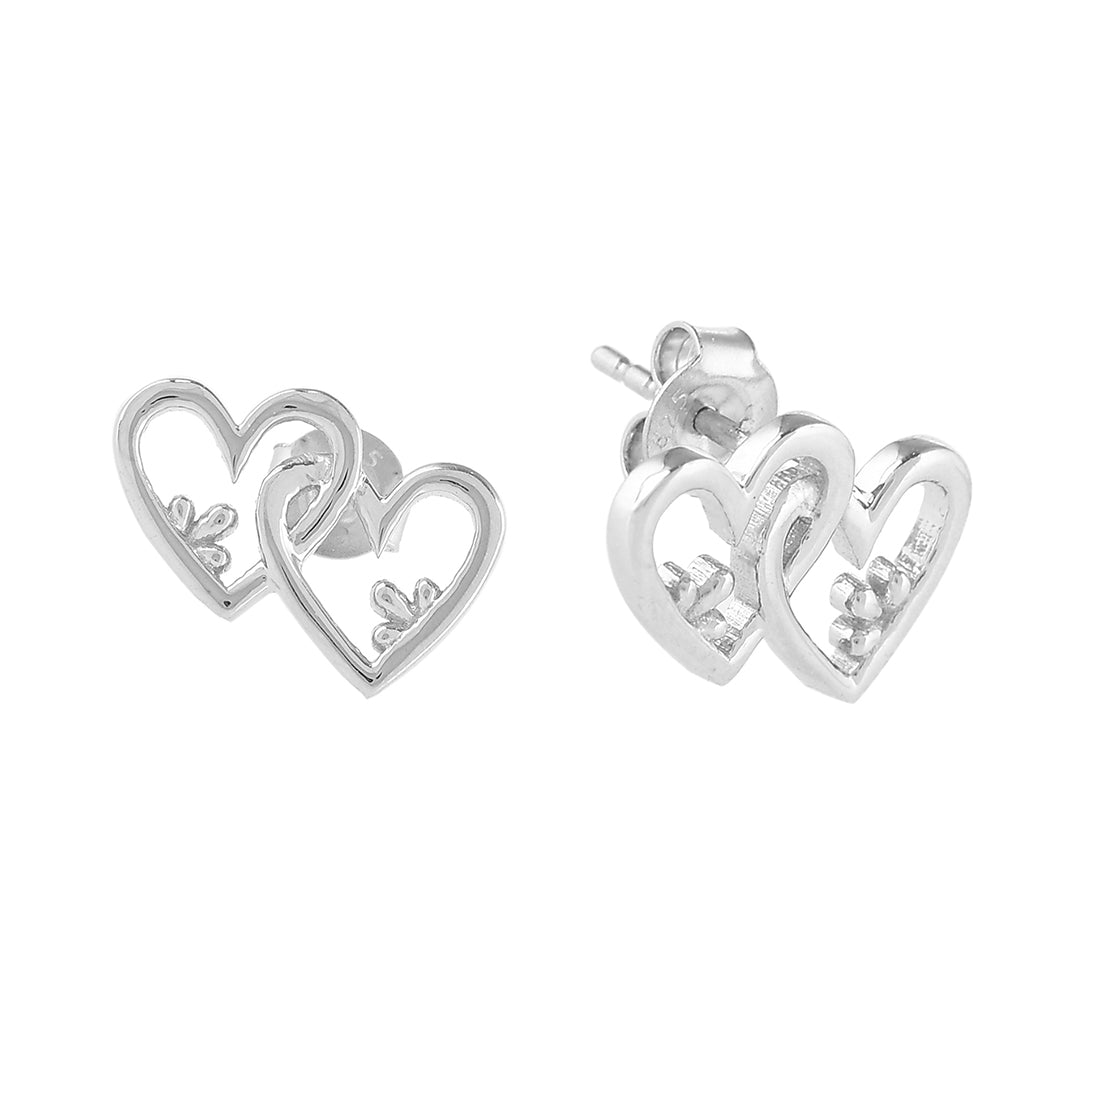 Women's Linked Hearts Earrings - Voylla